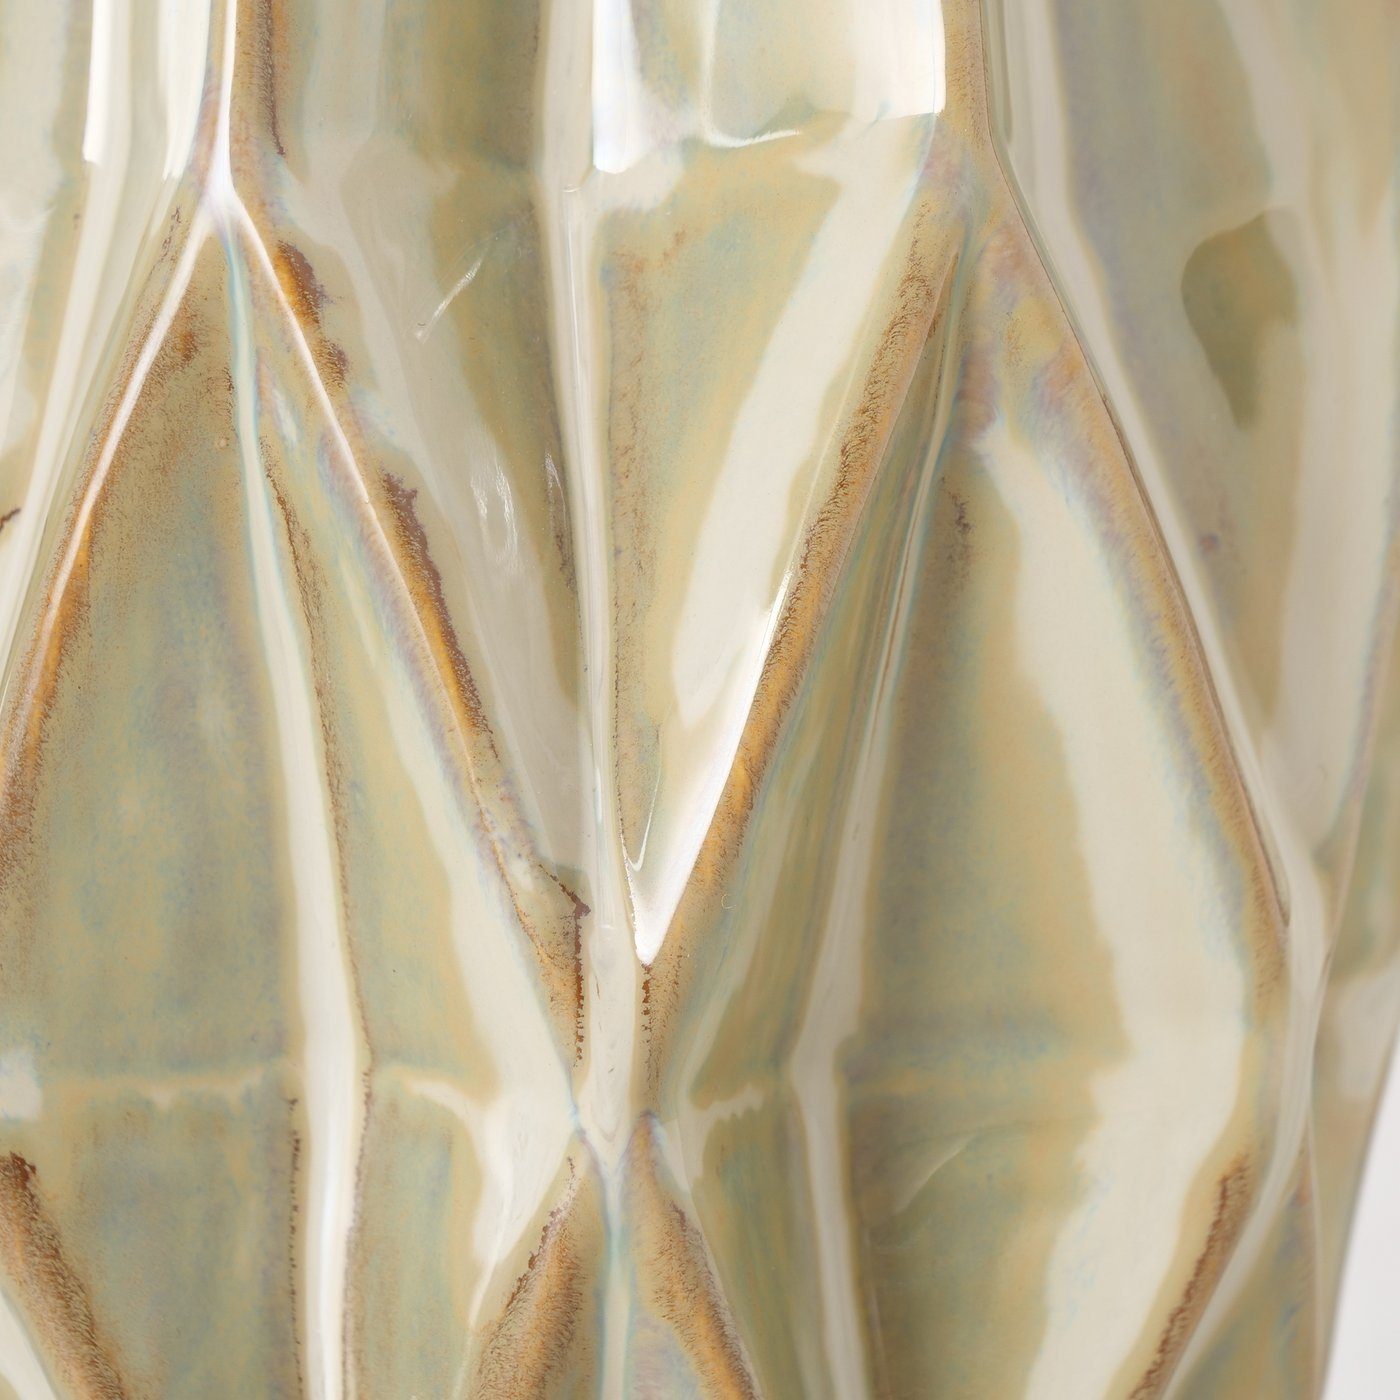 BOLTZE Dekovase "Stroma" in Porzellan Blumenvase beige, Vase aus